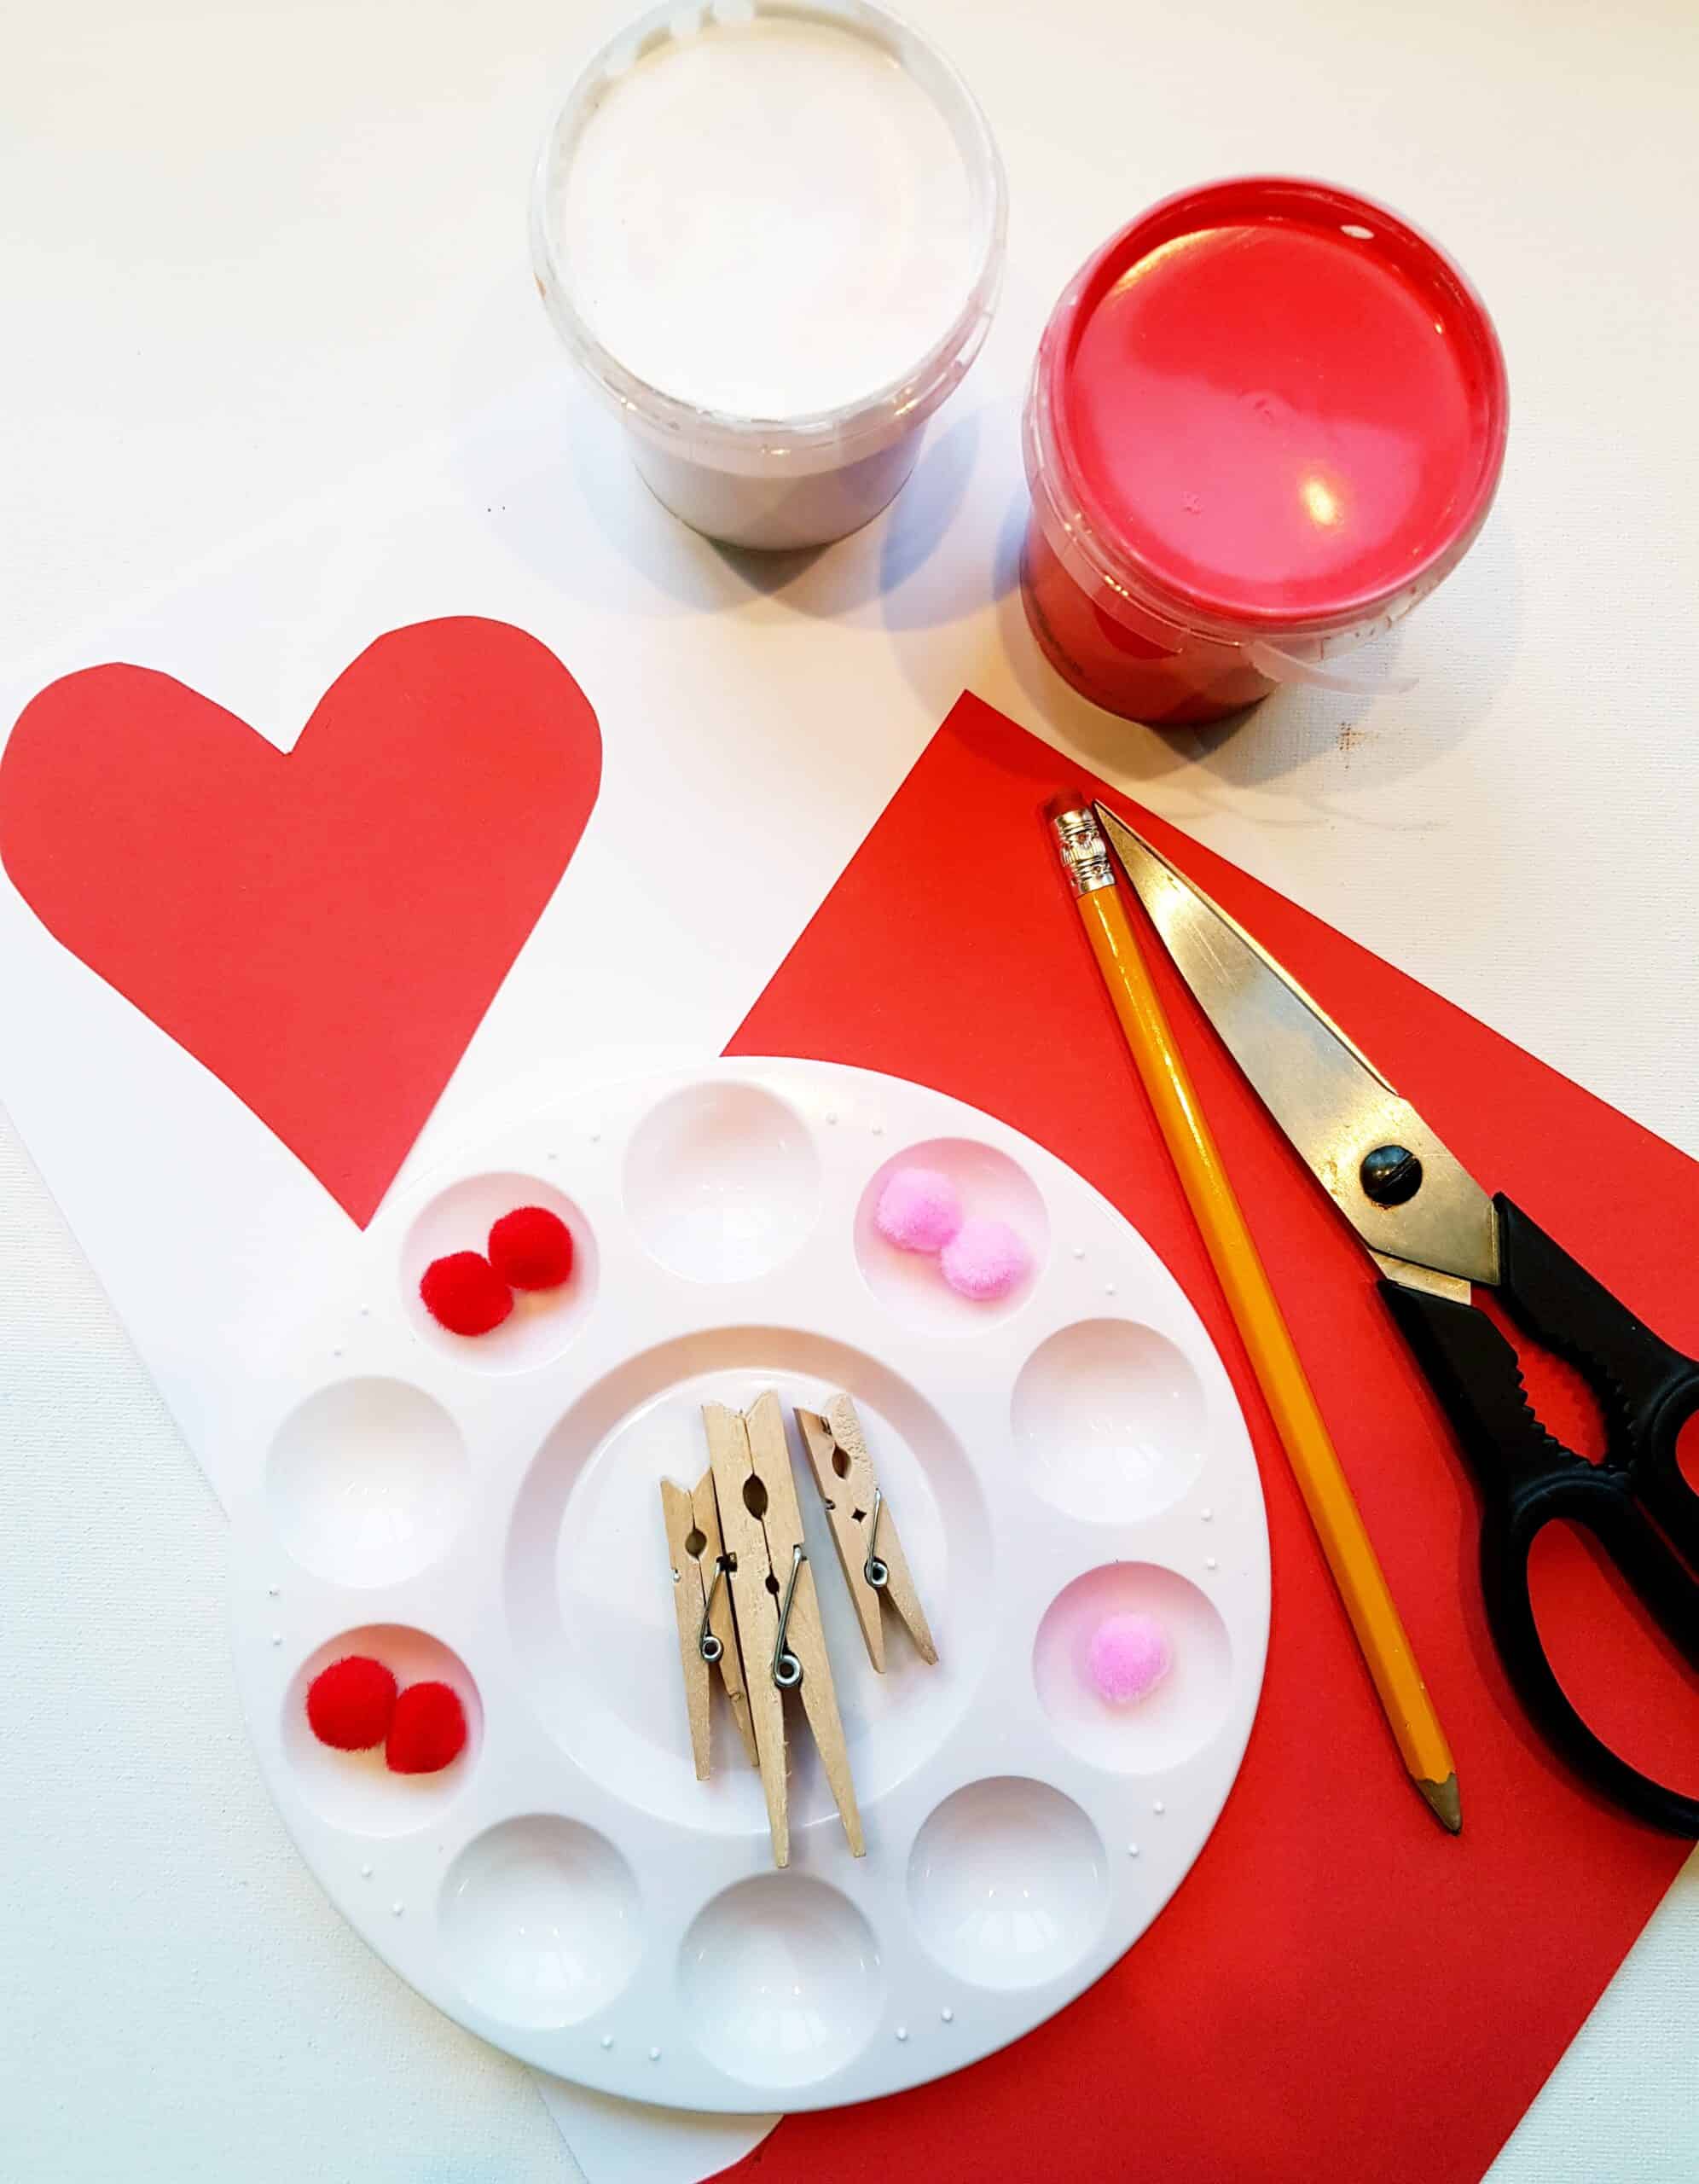 supplies for pom-pom heart art